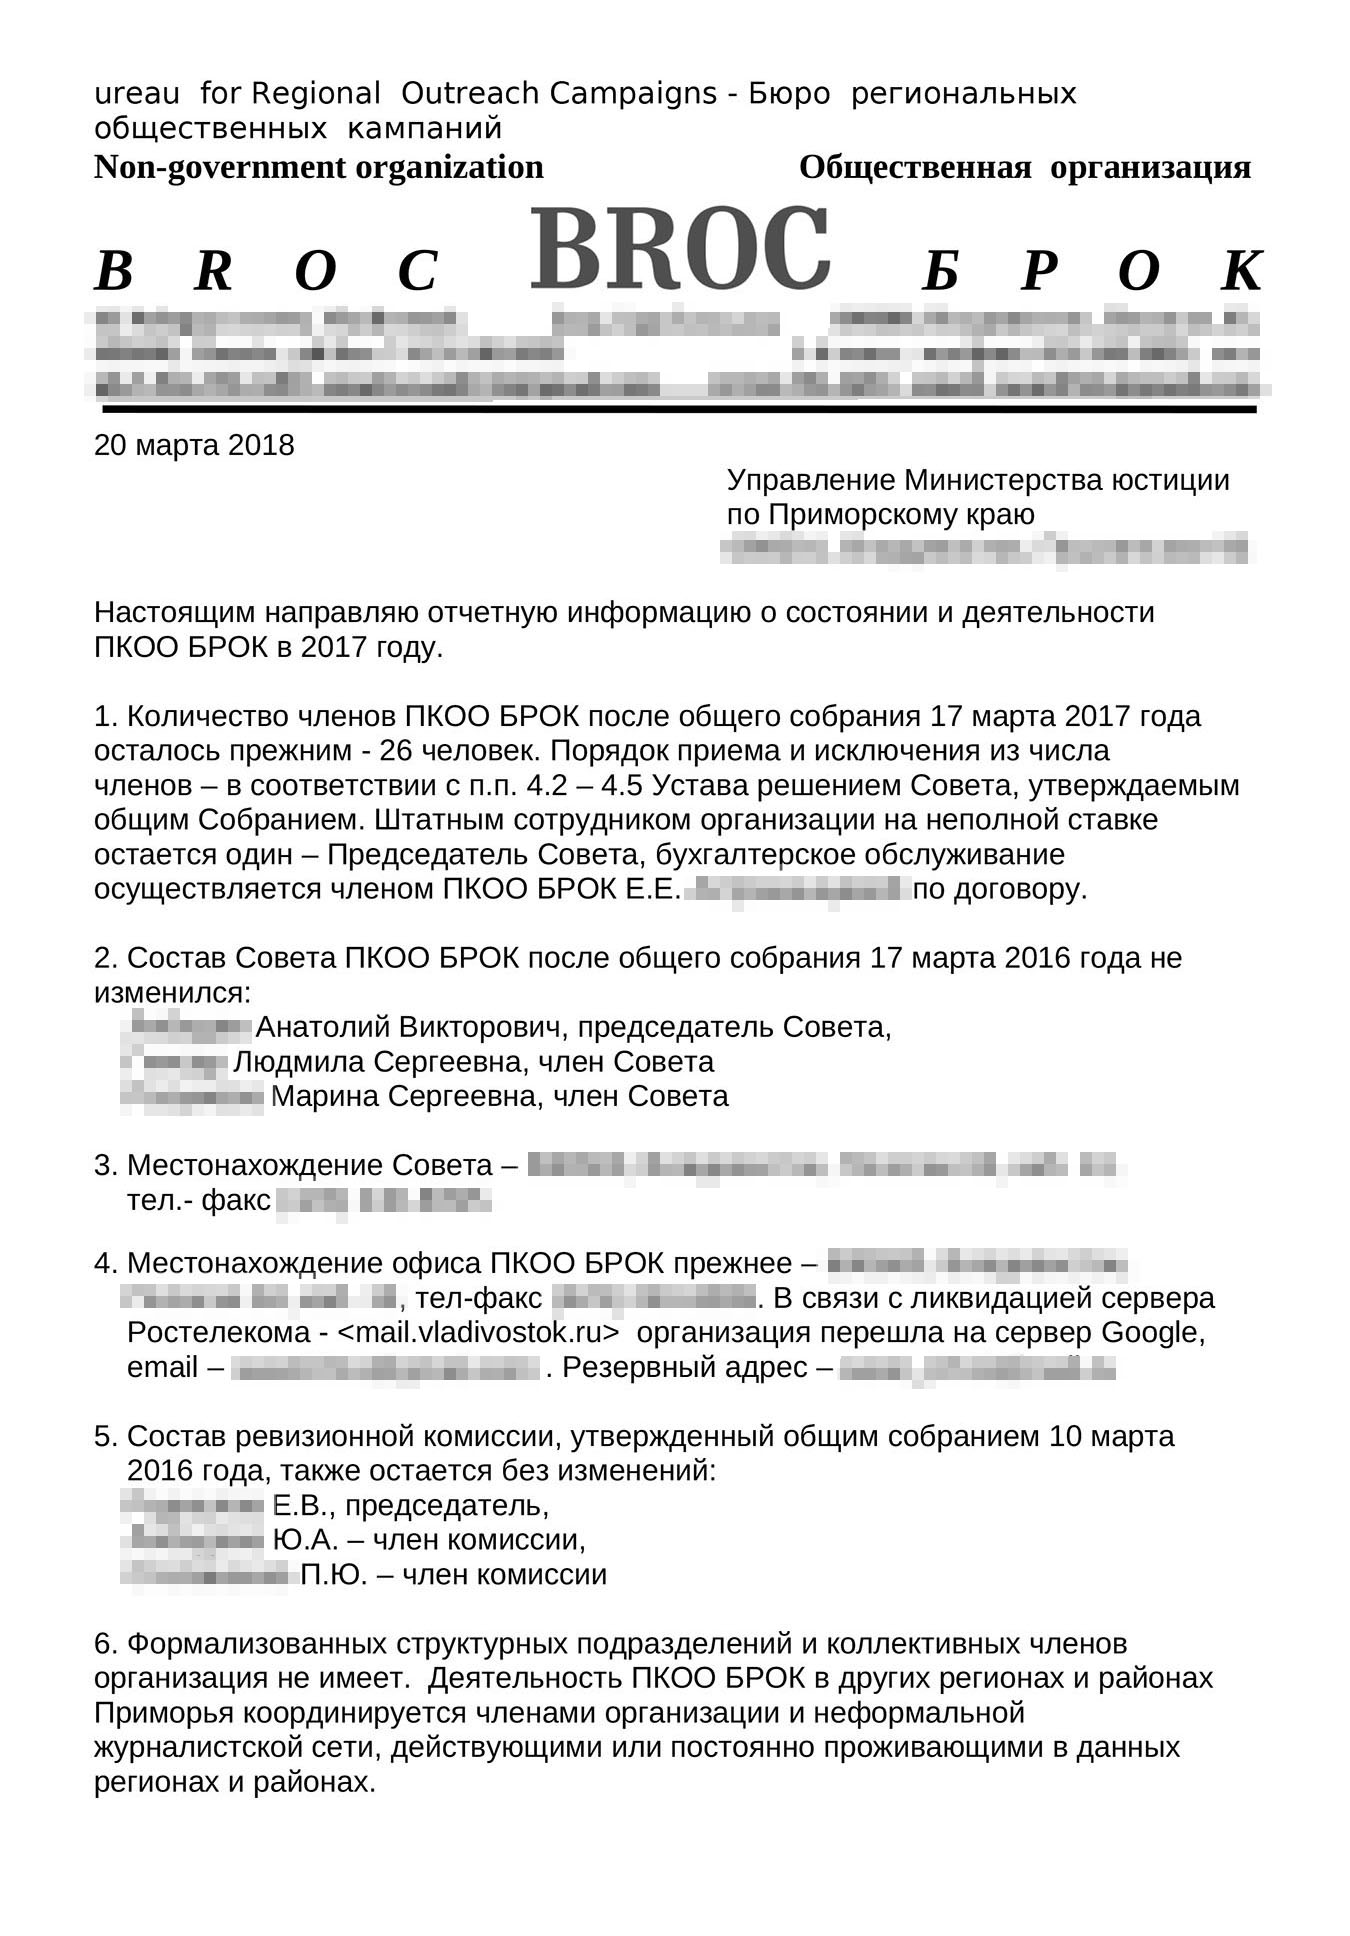 Так выглядит отчет НКО «БРОК» из Приморья: доходы организации — менее 3 млн рублей